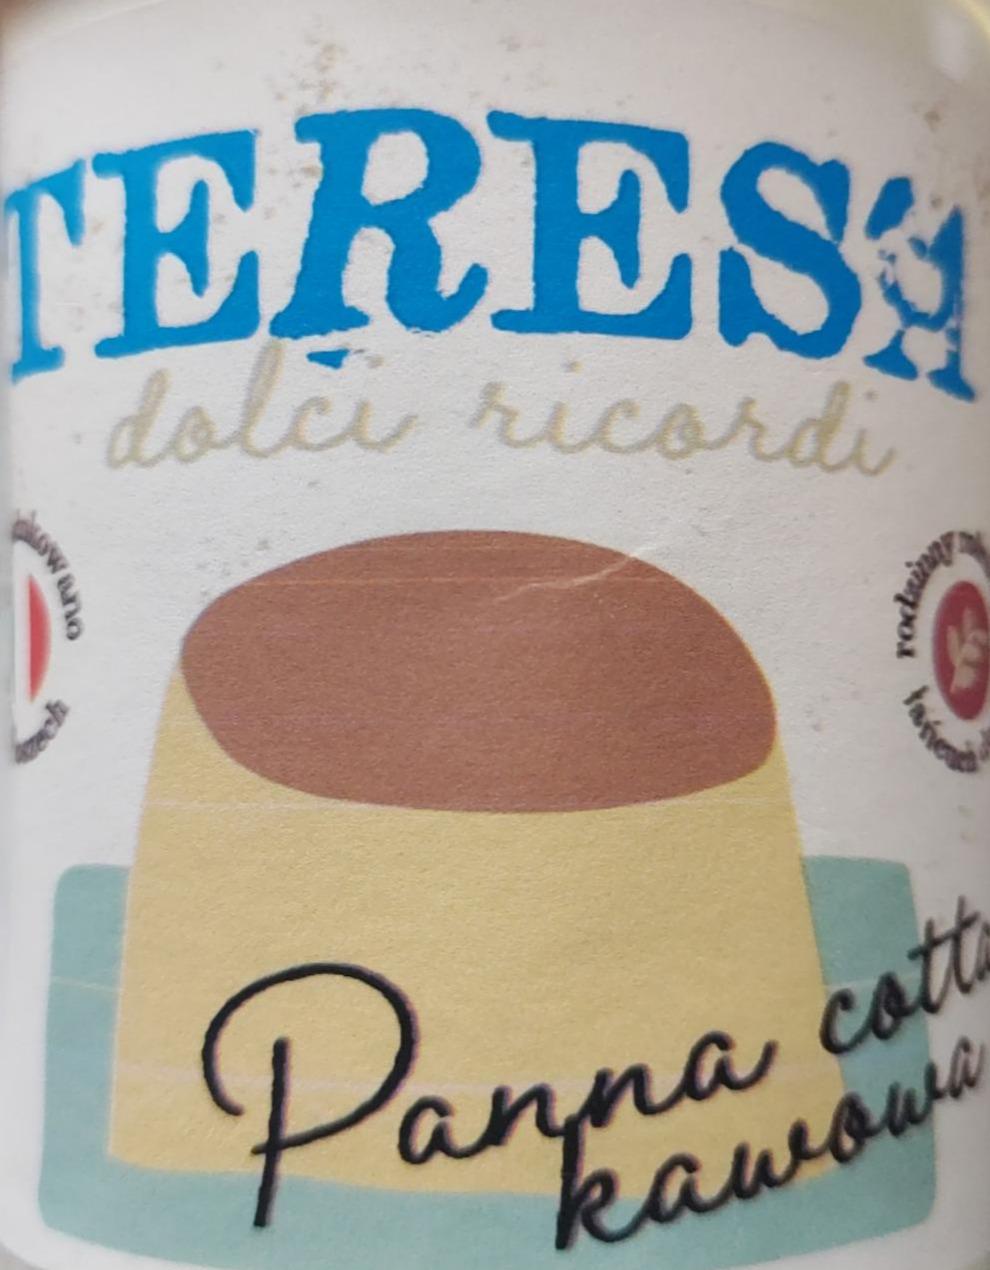 Zdjęcia - Panna cotta kawowa Teresa